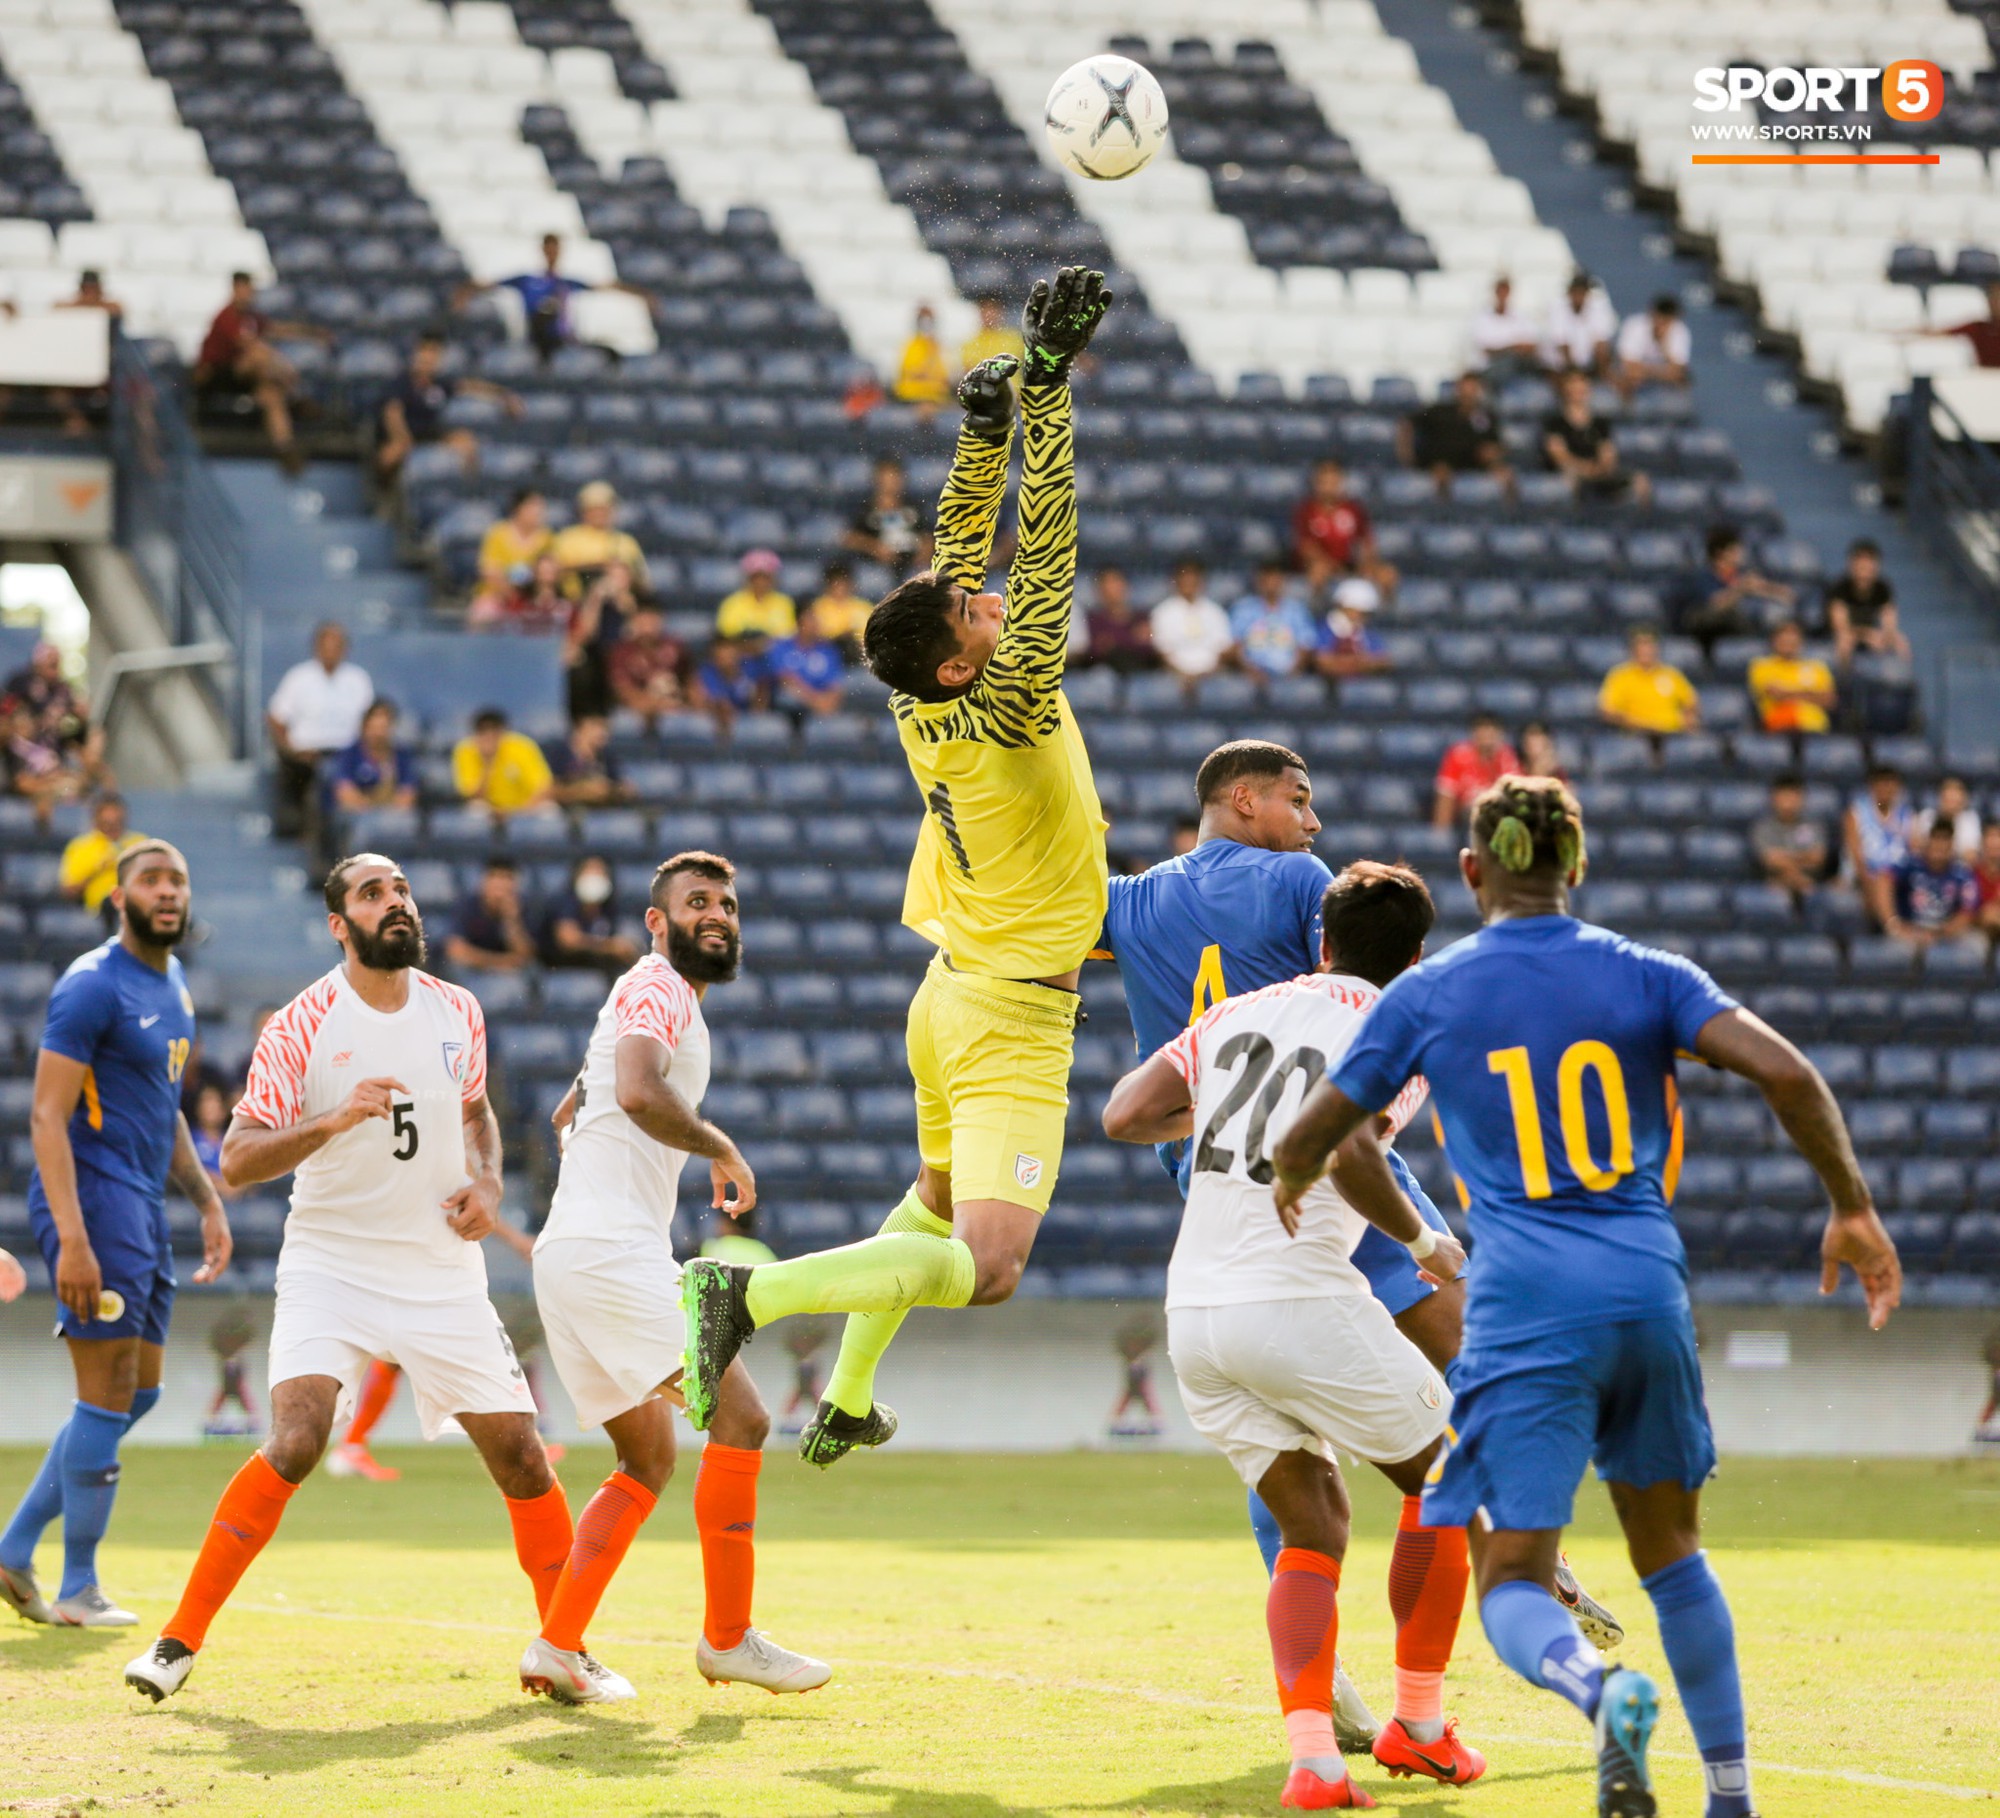 Tuyển thủ Curacao có giá trị bằng 2 đội hình tuyển Việt Nam, sở hữu kiểu đầu chất nhất Kings Cup 2019 - Ảnh 8.